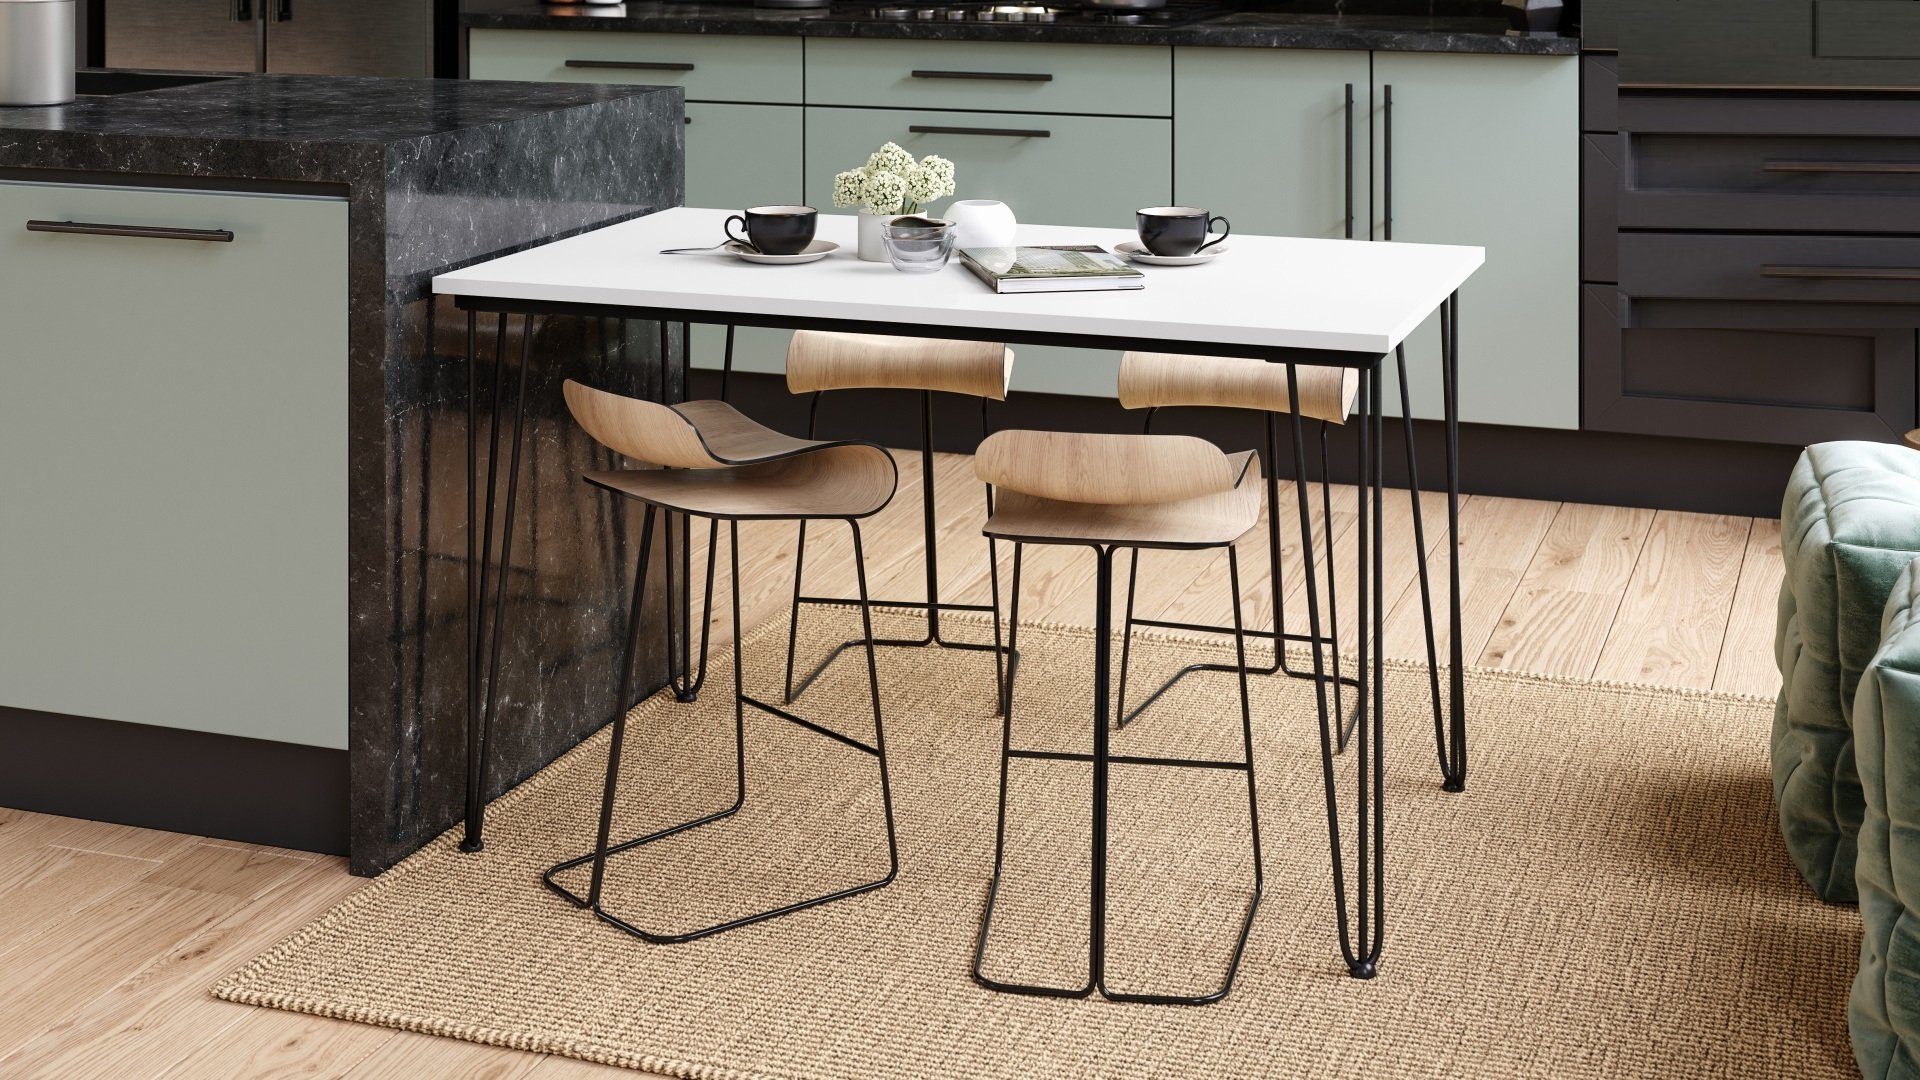 Schwarz Tisch Esstisch matt Mazzoni Weiß 120x75x70 cm - Esstisch matt Design Esszimmer Hairpin